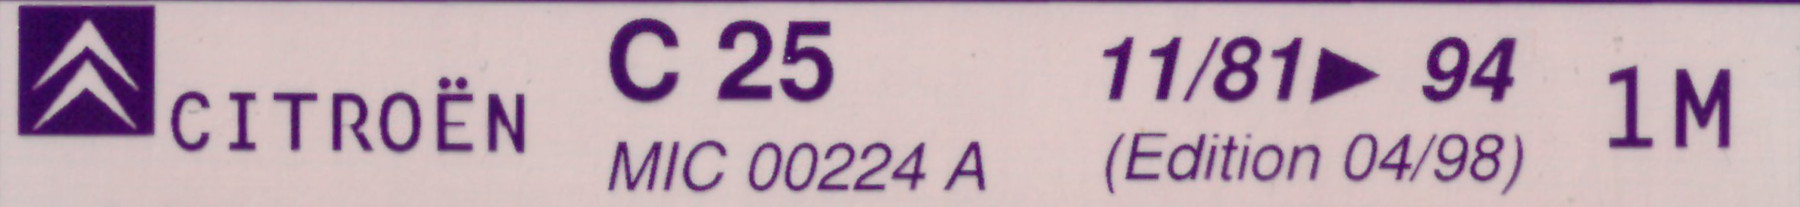 MIC00224A Catalogue pièces rechange Citroën C25 11/81►94 04/98